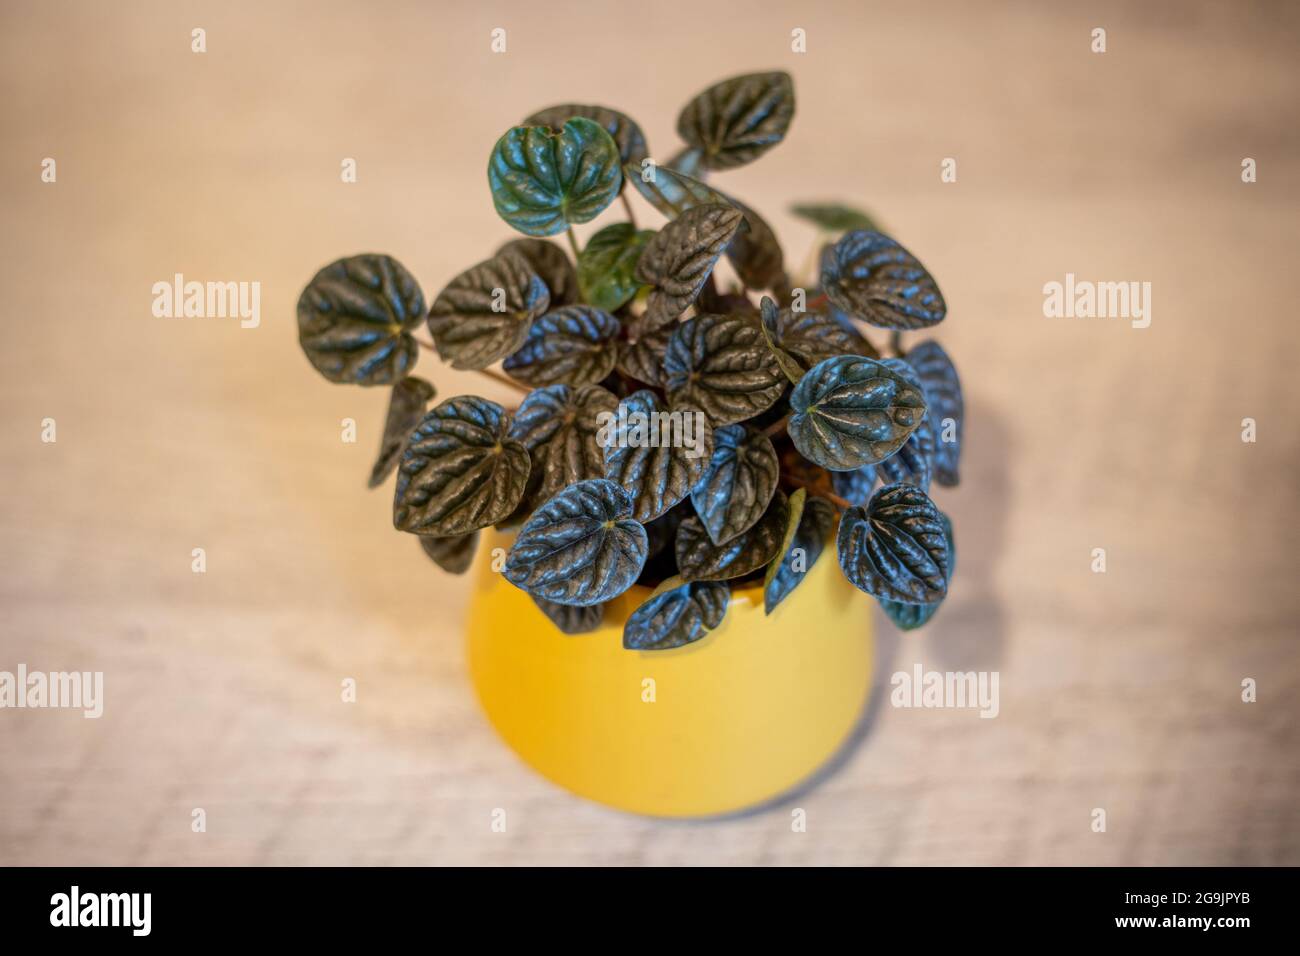 Una casa propagada de peperomia que crece bien en una olla de color amarillo mostaza Foto de stock